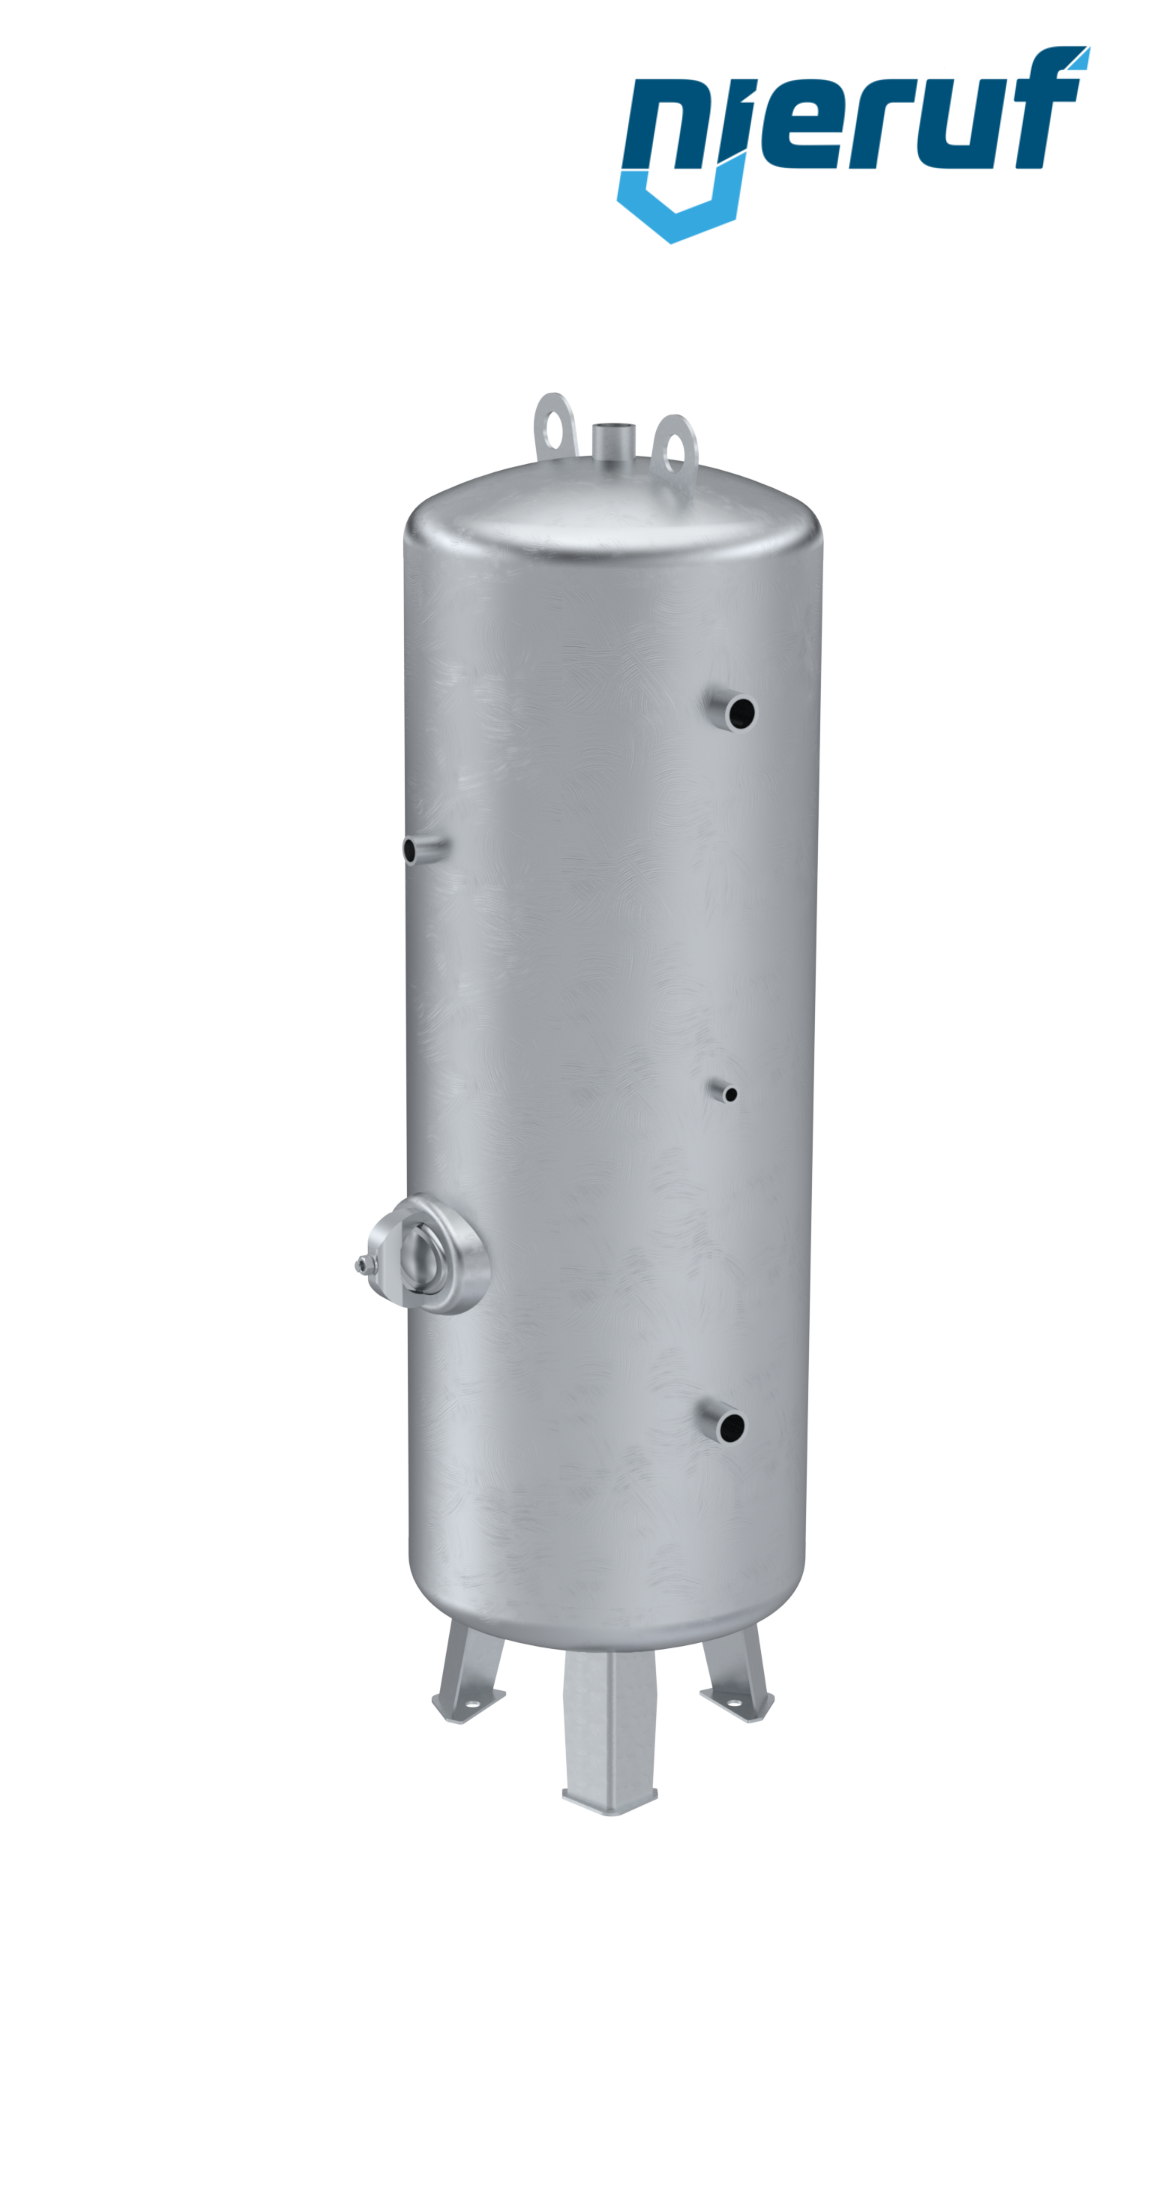 Serbatoi per alta pressione verticale BE02 750 litri, 0-26 bar, acciaio primerizzato